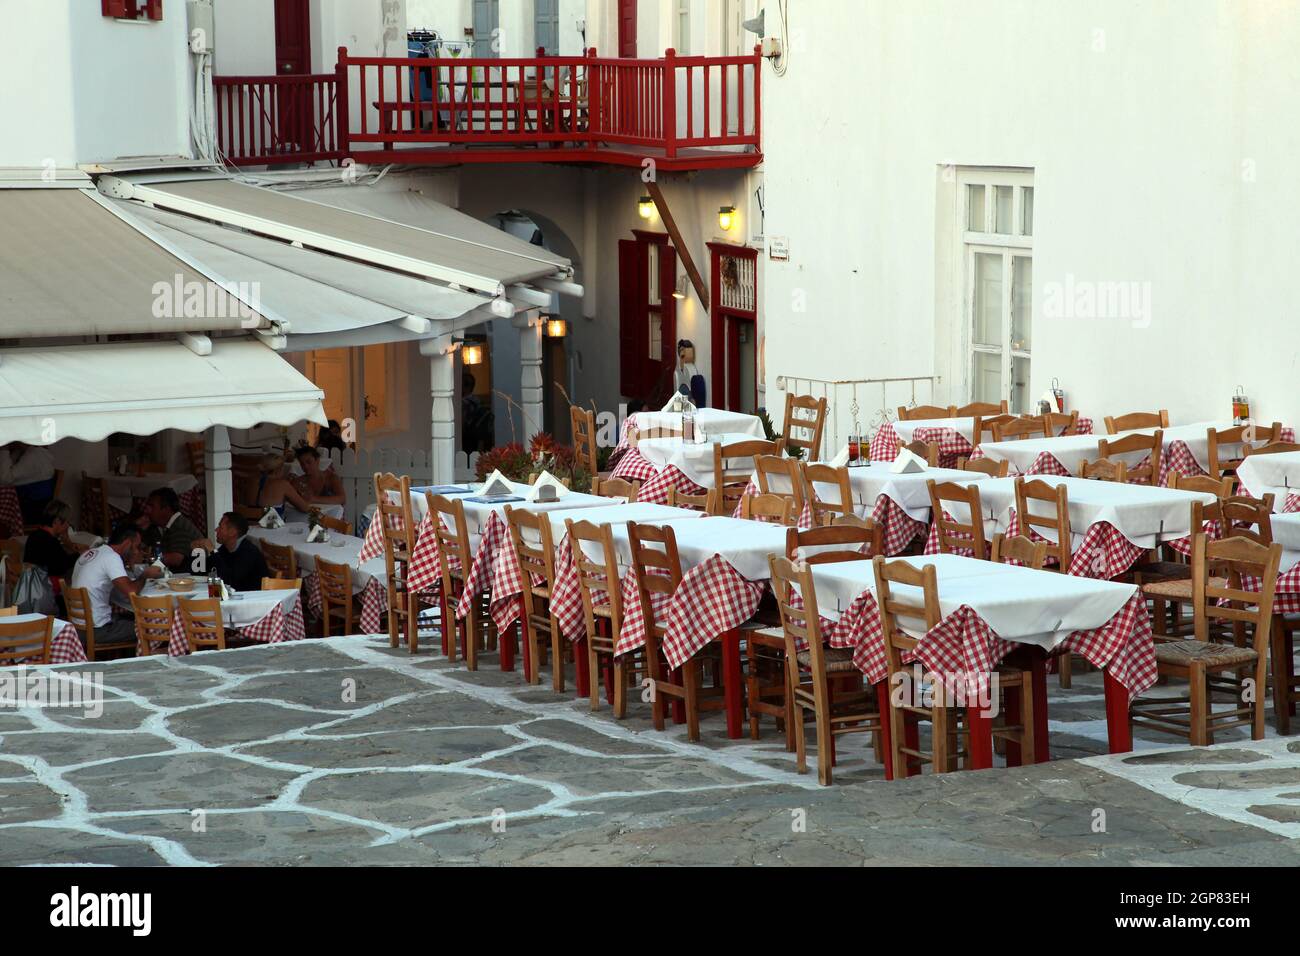 Menschen, die sich ausruhen und im Mykonos Town Center Restaurant in Griechenland essen. Mykonos liegt im Bereich der zentralen Ägäis. Stockfoto